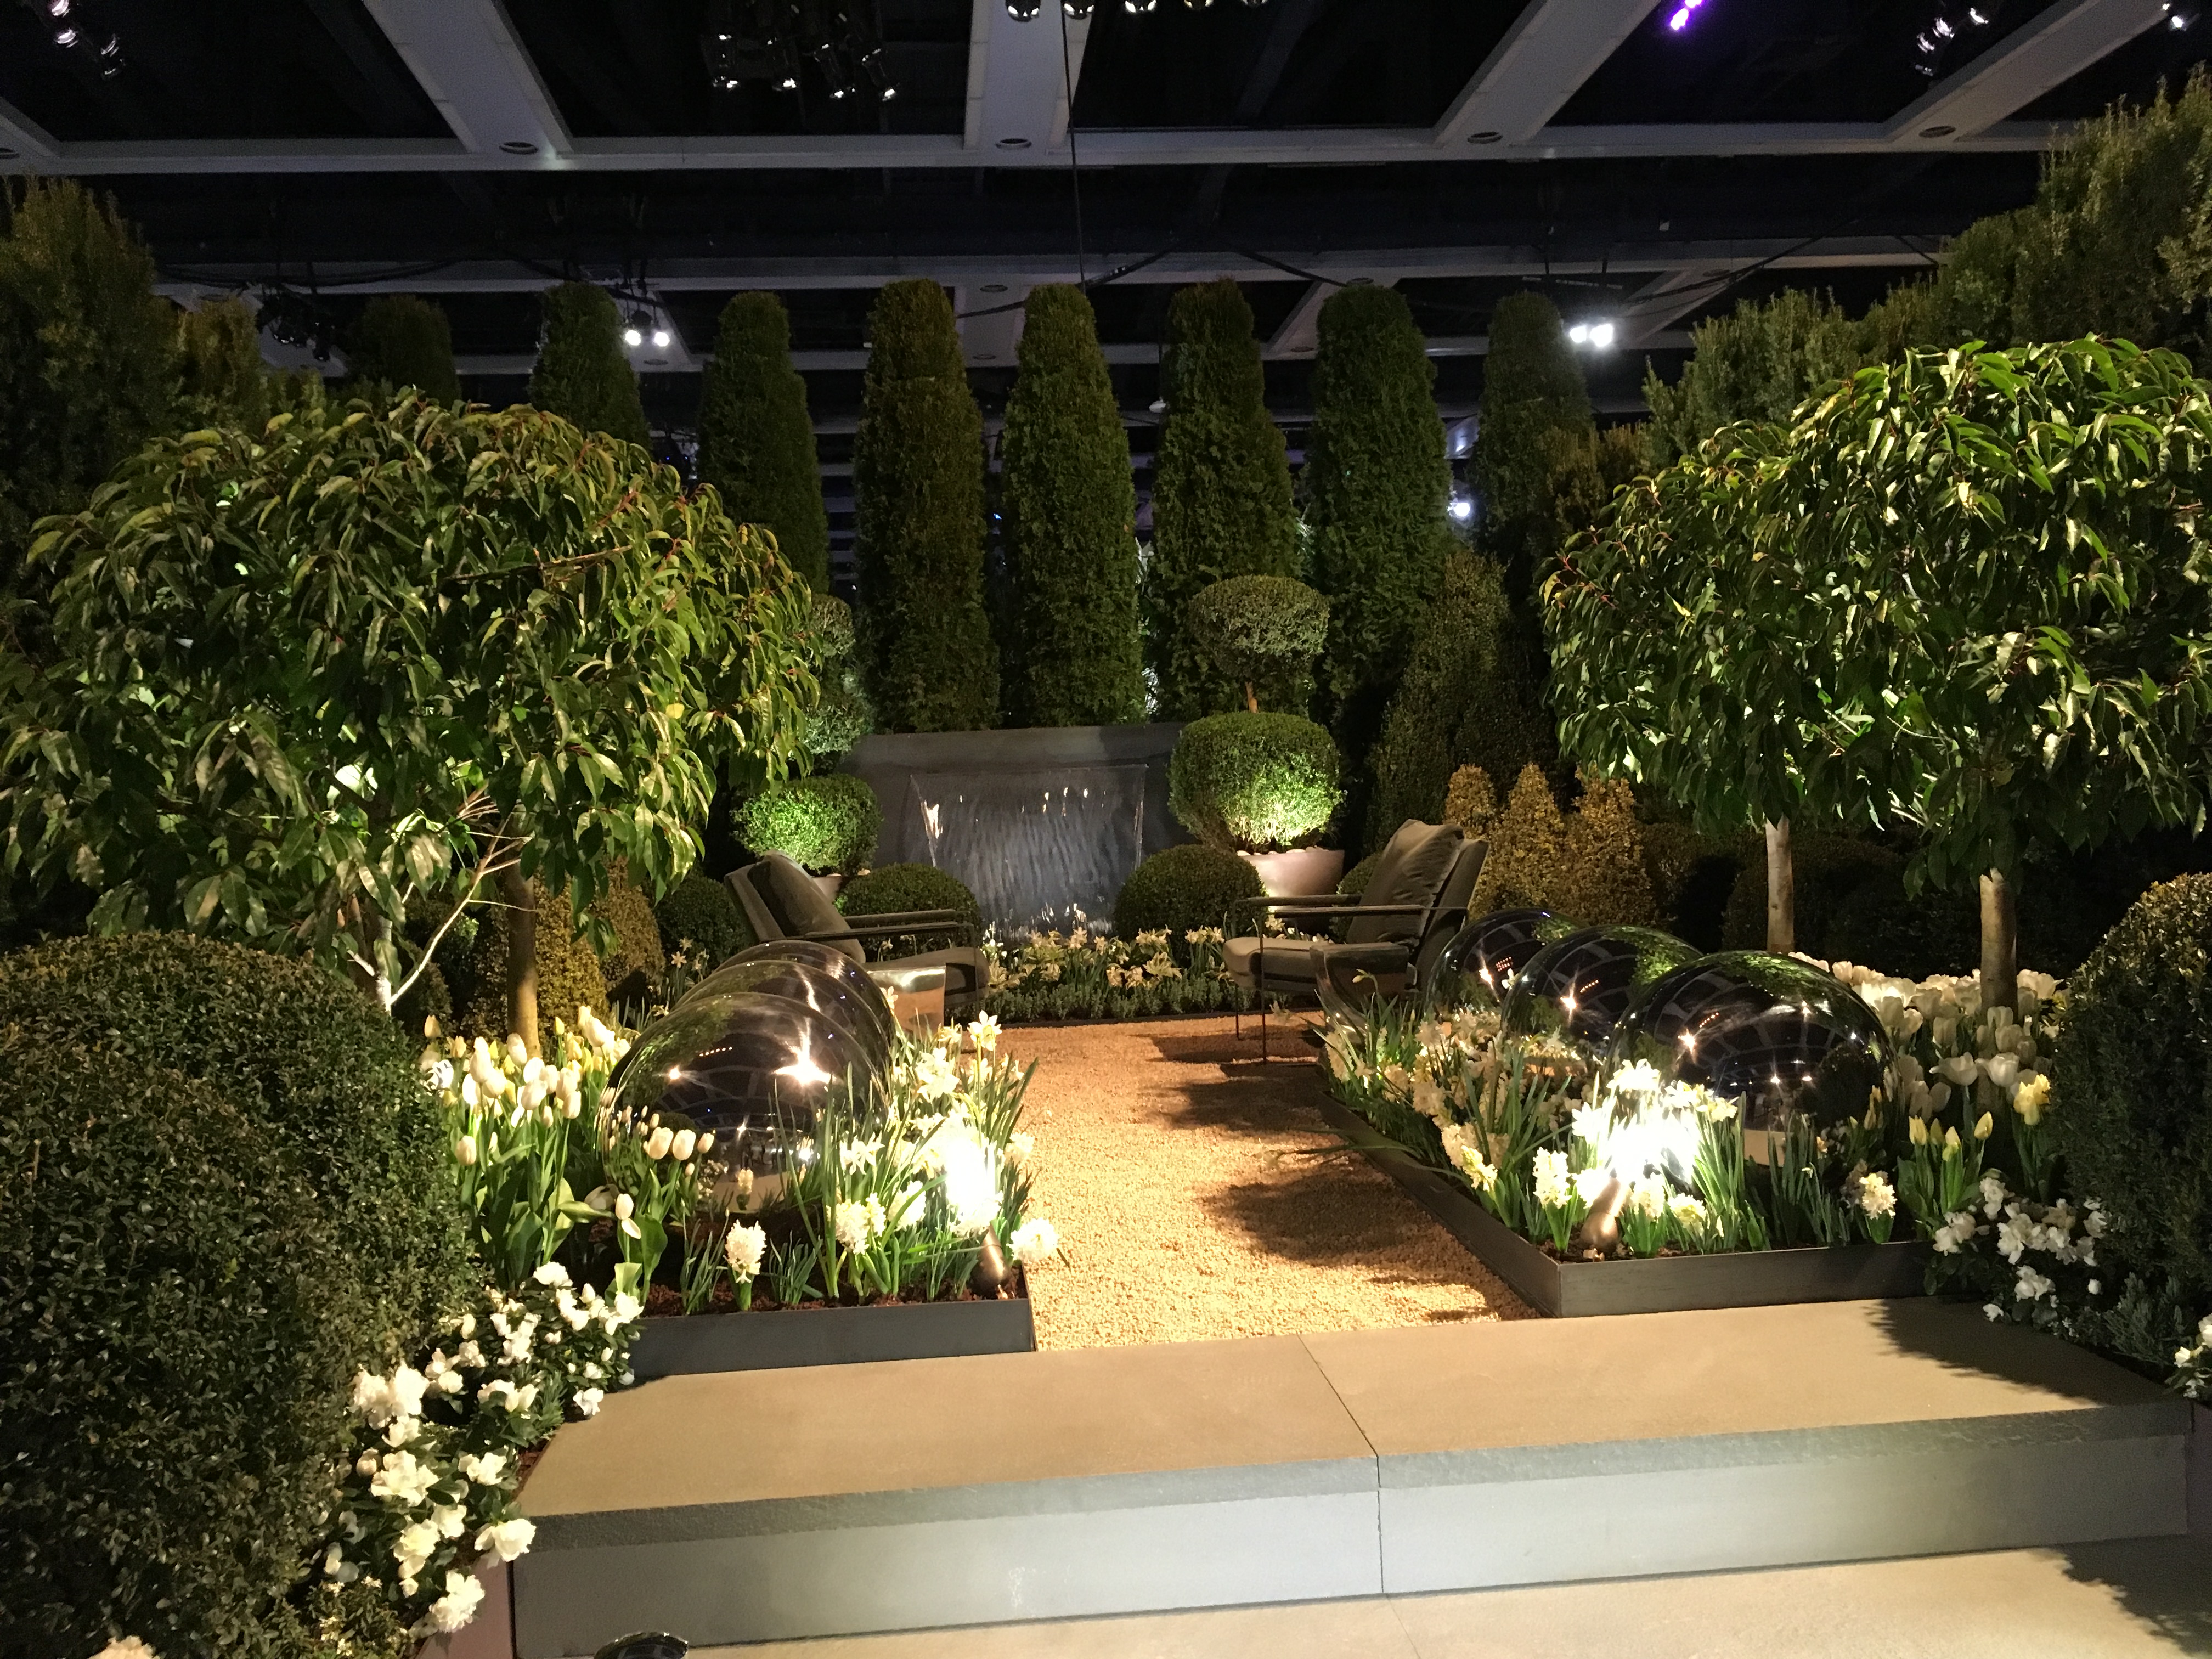 Northwest Flower and Garden Show demonstration garden in 2019